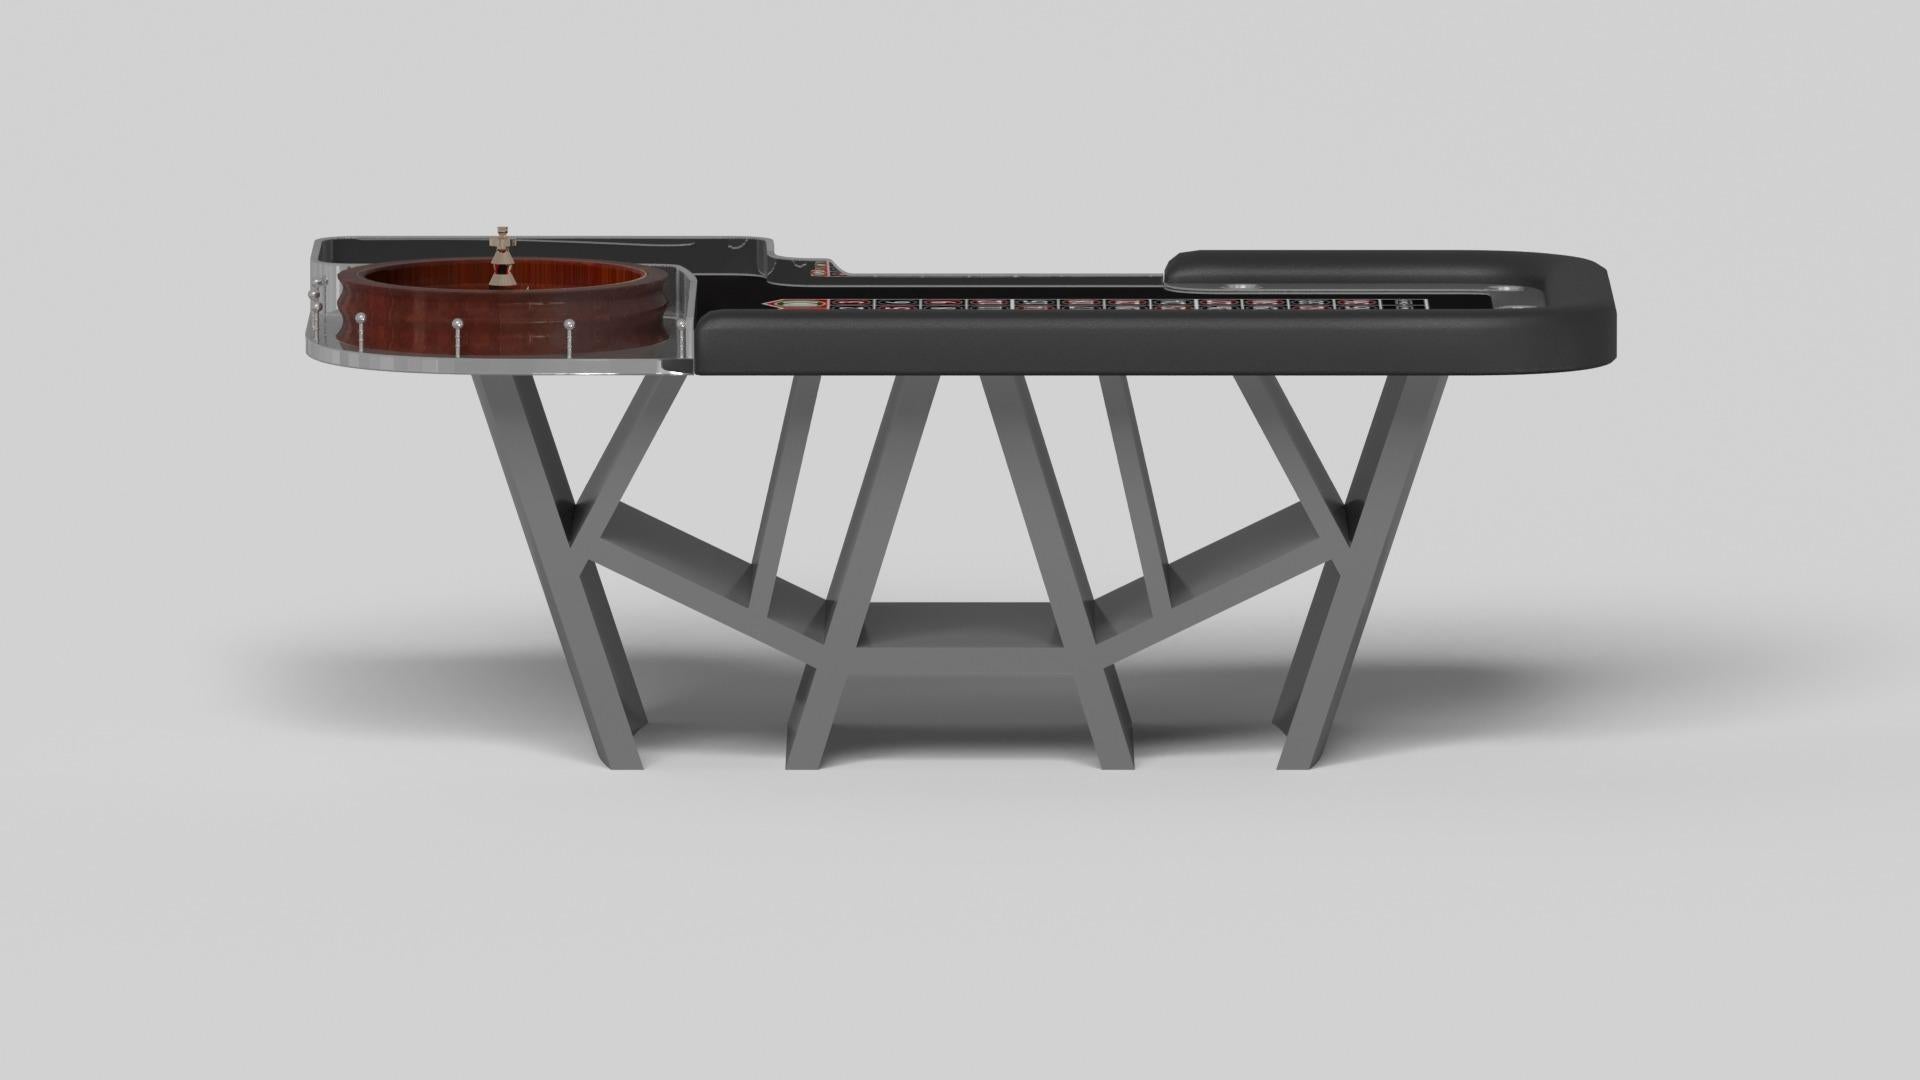 Américain Elevate Customs Maze Roulette Tables / Métal de feuille en acier inoxydable en 8'2